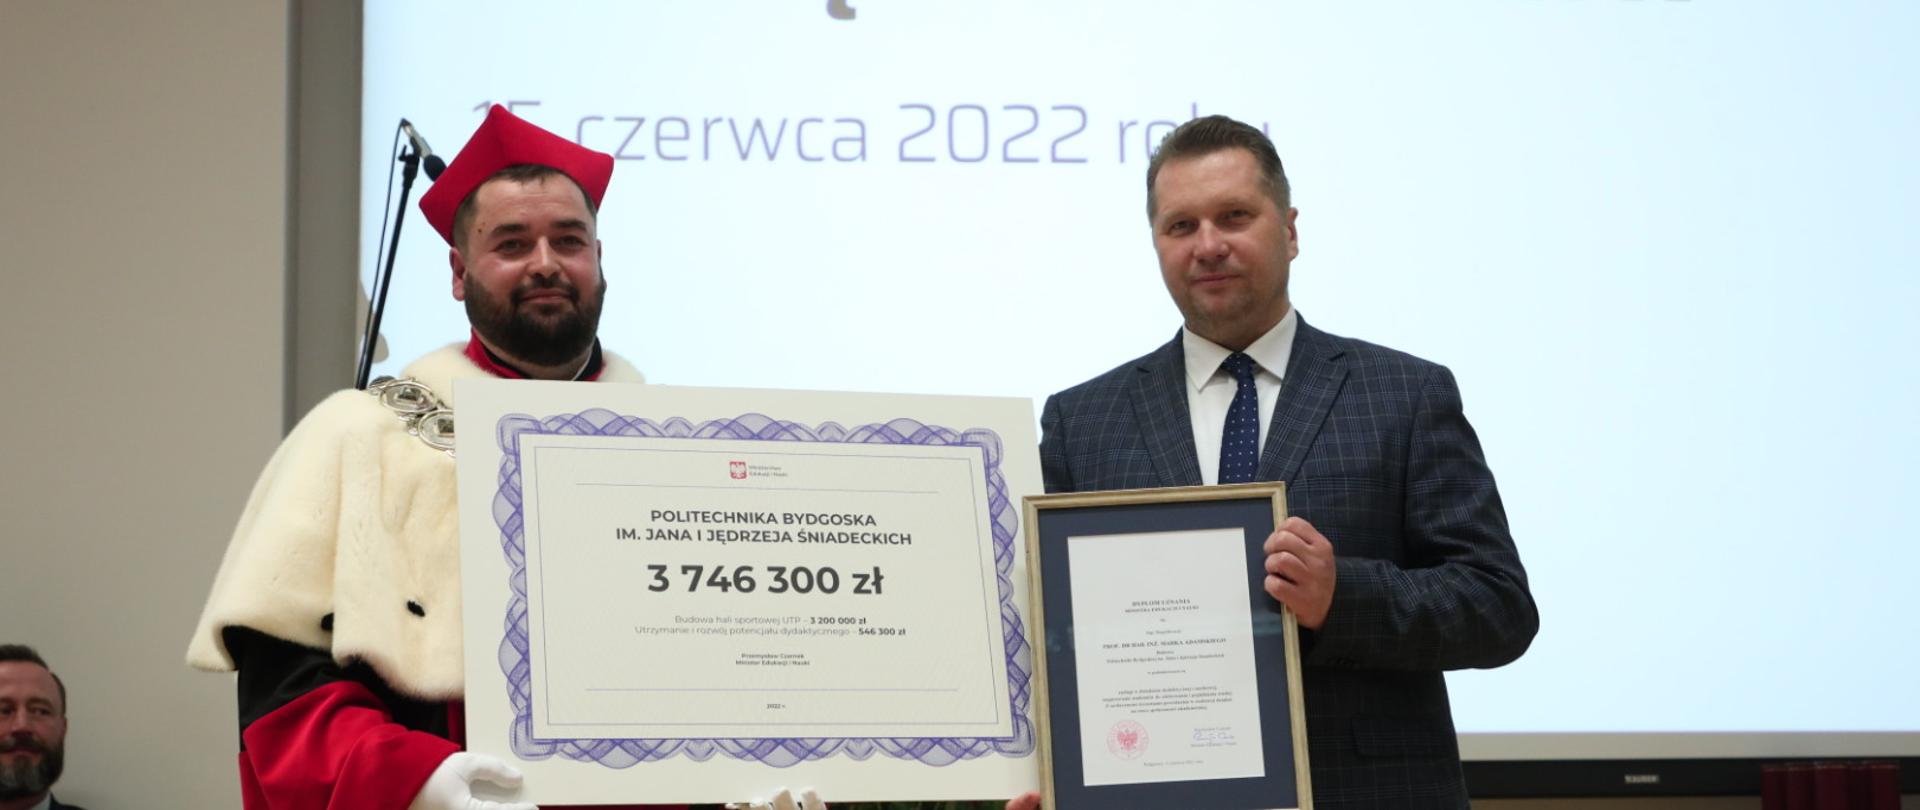 Minister prezentuje symboliczny czek na kwotę 3 746 300 zł.